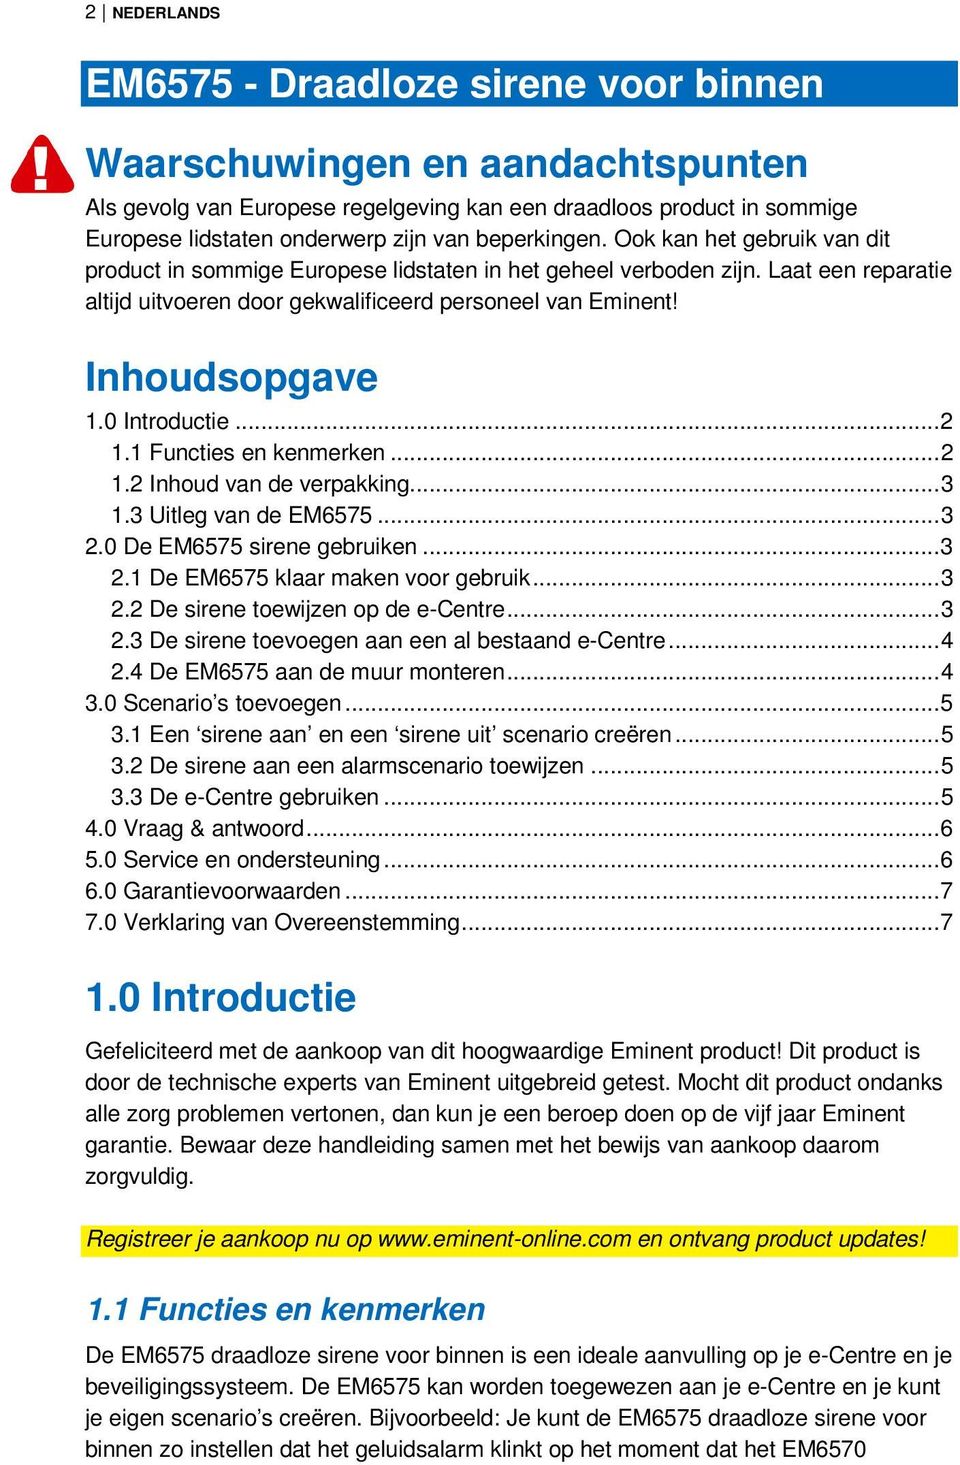 Inhoudsopgave 1.0 Introductie... 2 1.1 Functies en kenmerken... 2 1.2 Inhoud van de verpakking... 3 1.3 Uitleg van de EM6575... 3 2.0 De EM6575 sirene gebruiken... 3 2.1 De EM6575 klaar maken voor gebruik.